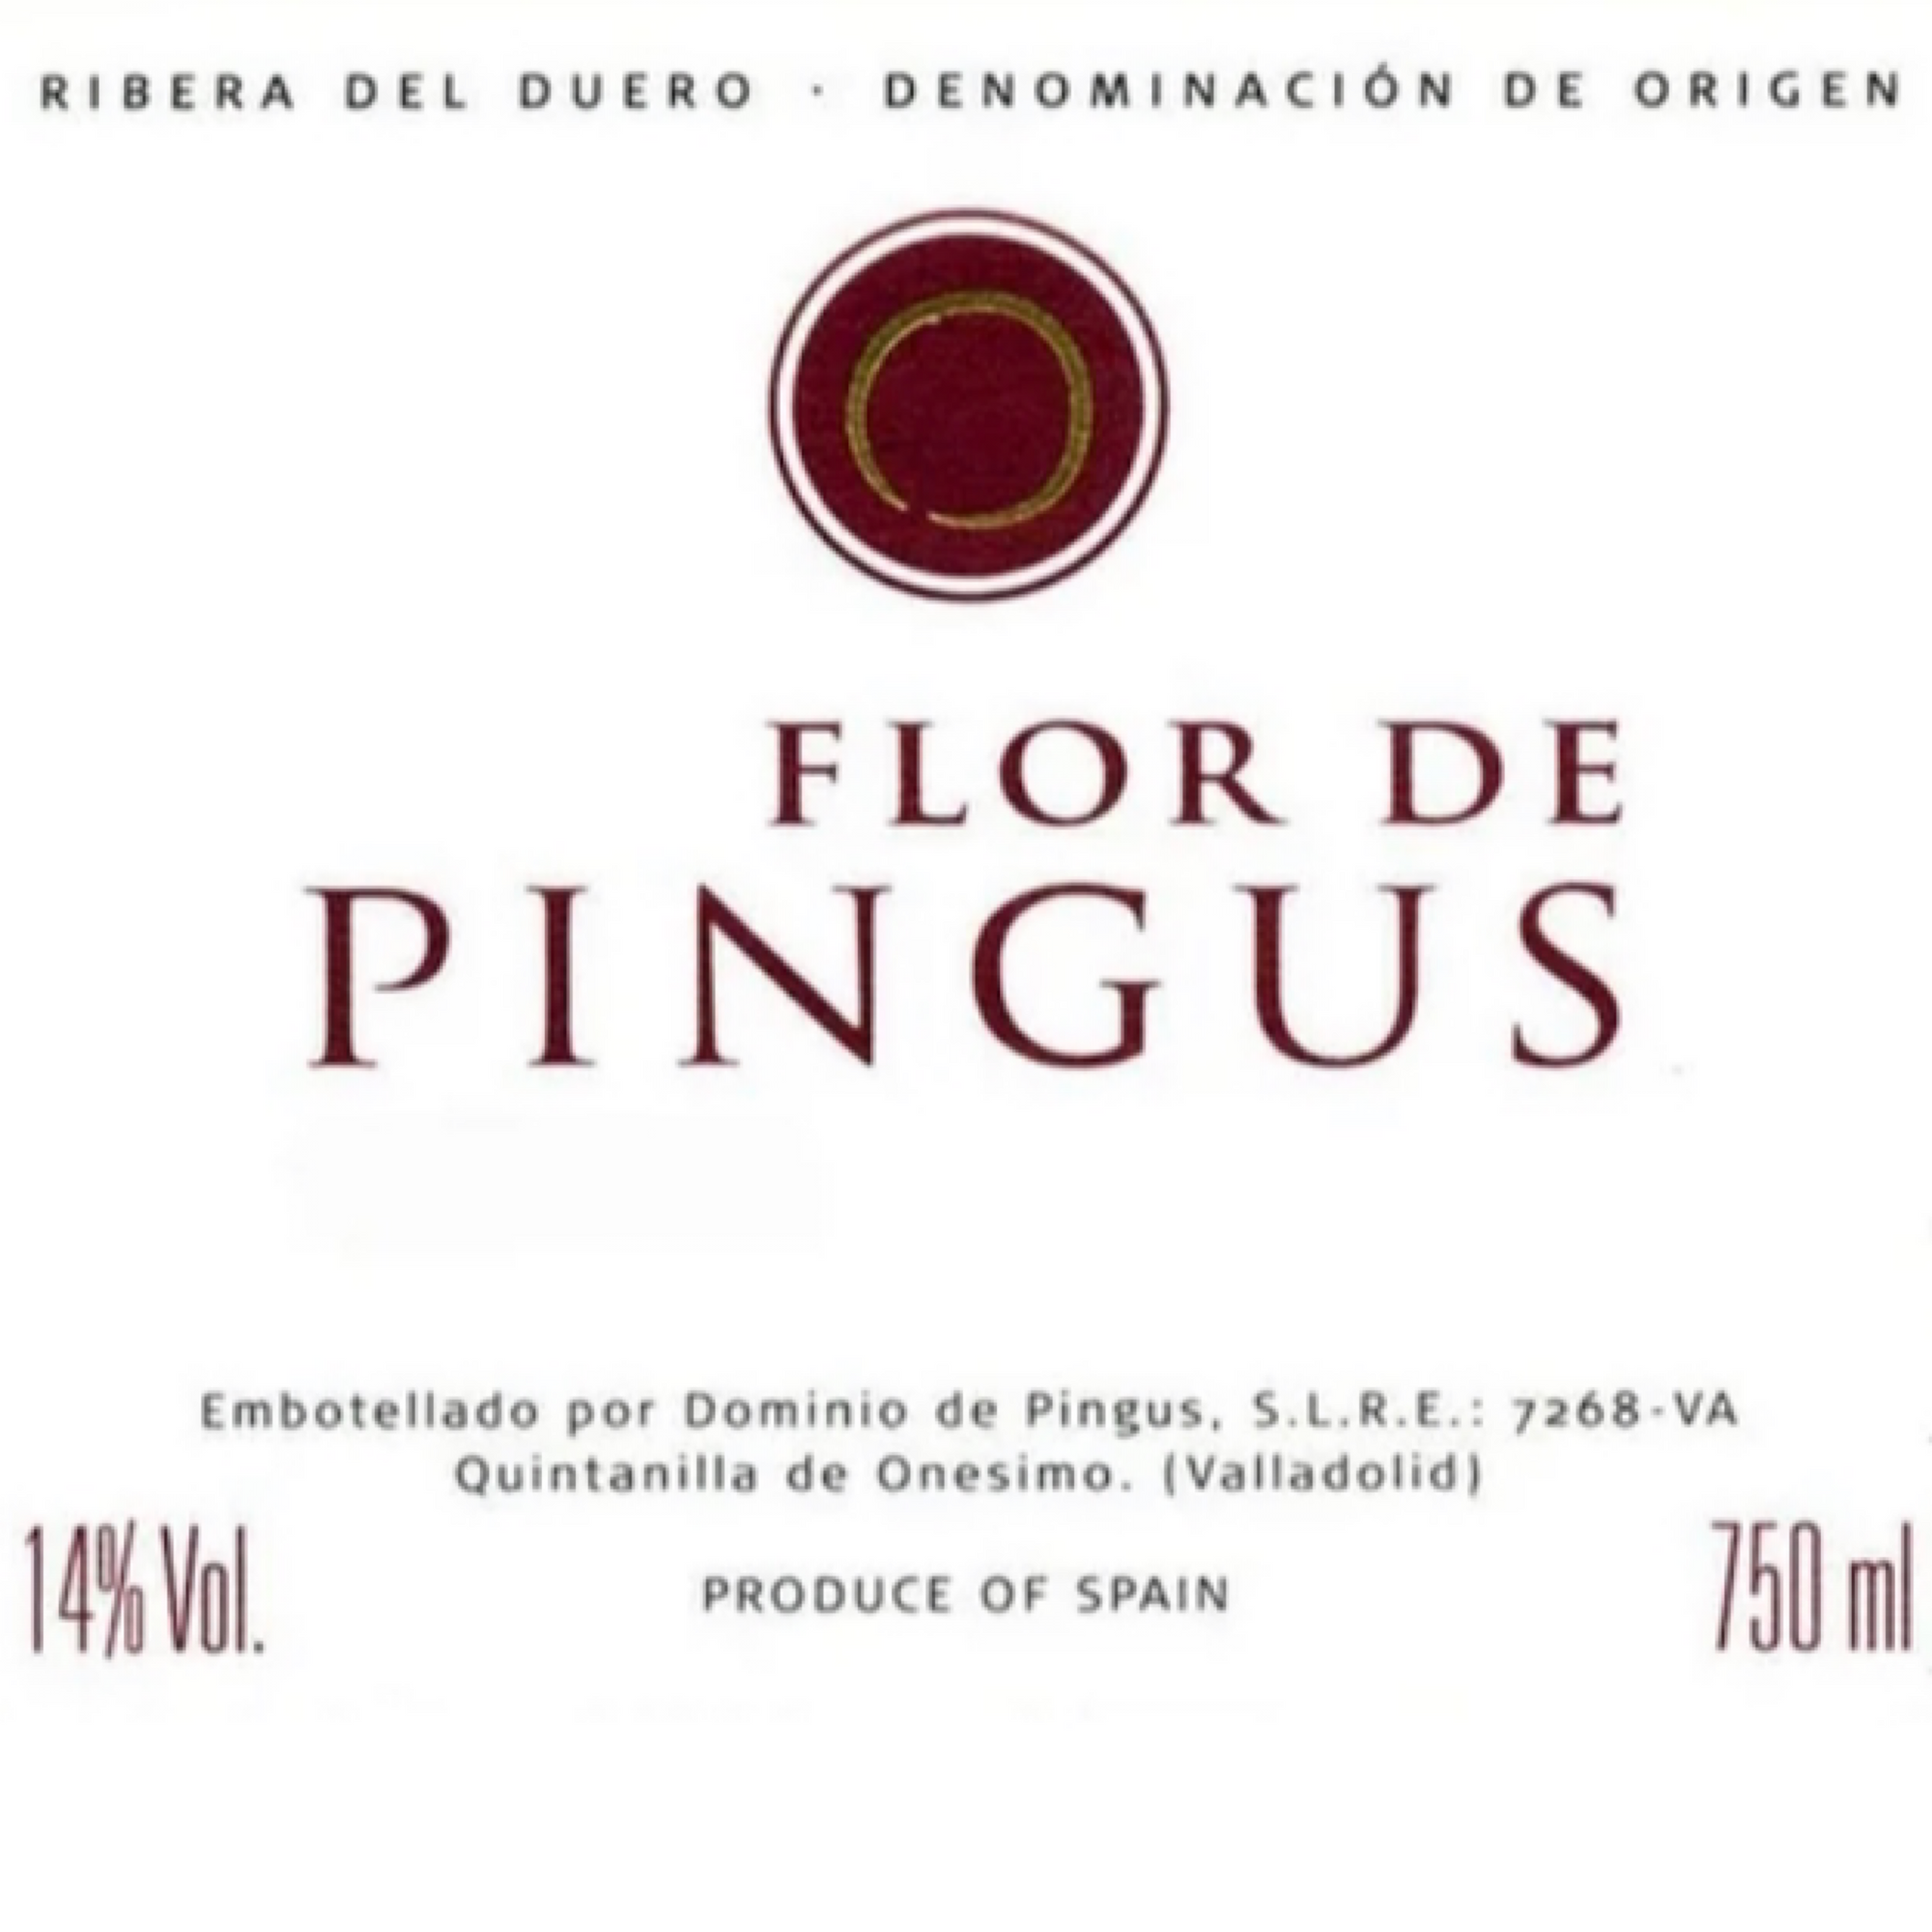 Flor de Pingus 2016 Ribera del Duero